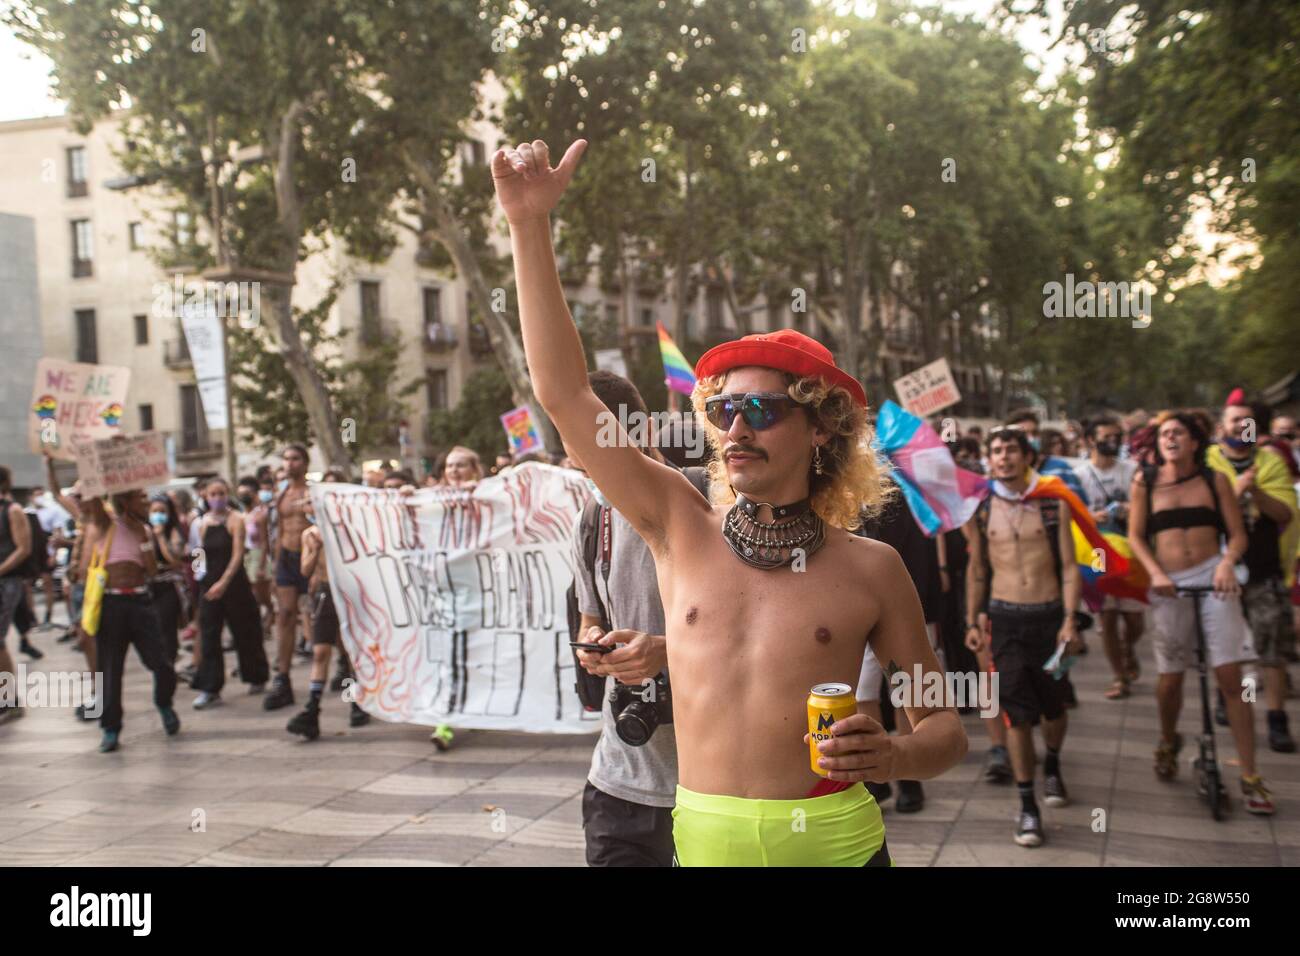 Barcellona, Spagna. 22 luglio 2021. Un manifestante durante la dimostrazione.il collettivo transgender di Barcellona, Furia Trans (fury trans) hanno invaso una manifestazione chiamata da Pride Barcelona e la piattaforma LGTBIcat contro LGBTI-fòbia, accusandoli di escludere molte delle realtà del movimento LGBTIQ, e di appropriazione e commercializzazione del movimento. La Trans fury ha seguito la strada e i manifestanti dell'altra manifestazione si uniranno a loro per un totale di 4000 persone. Credit: SOPA Images Limited/Alamy Live News Foto Stock